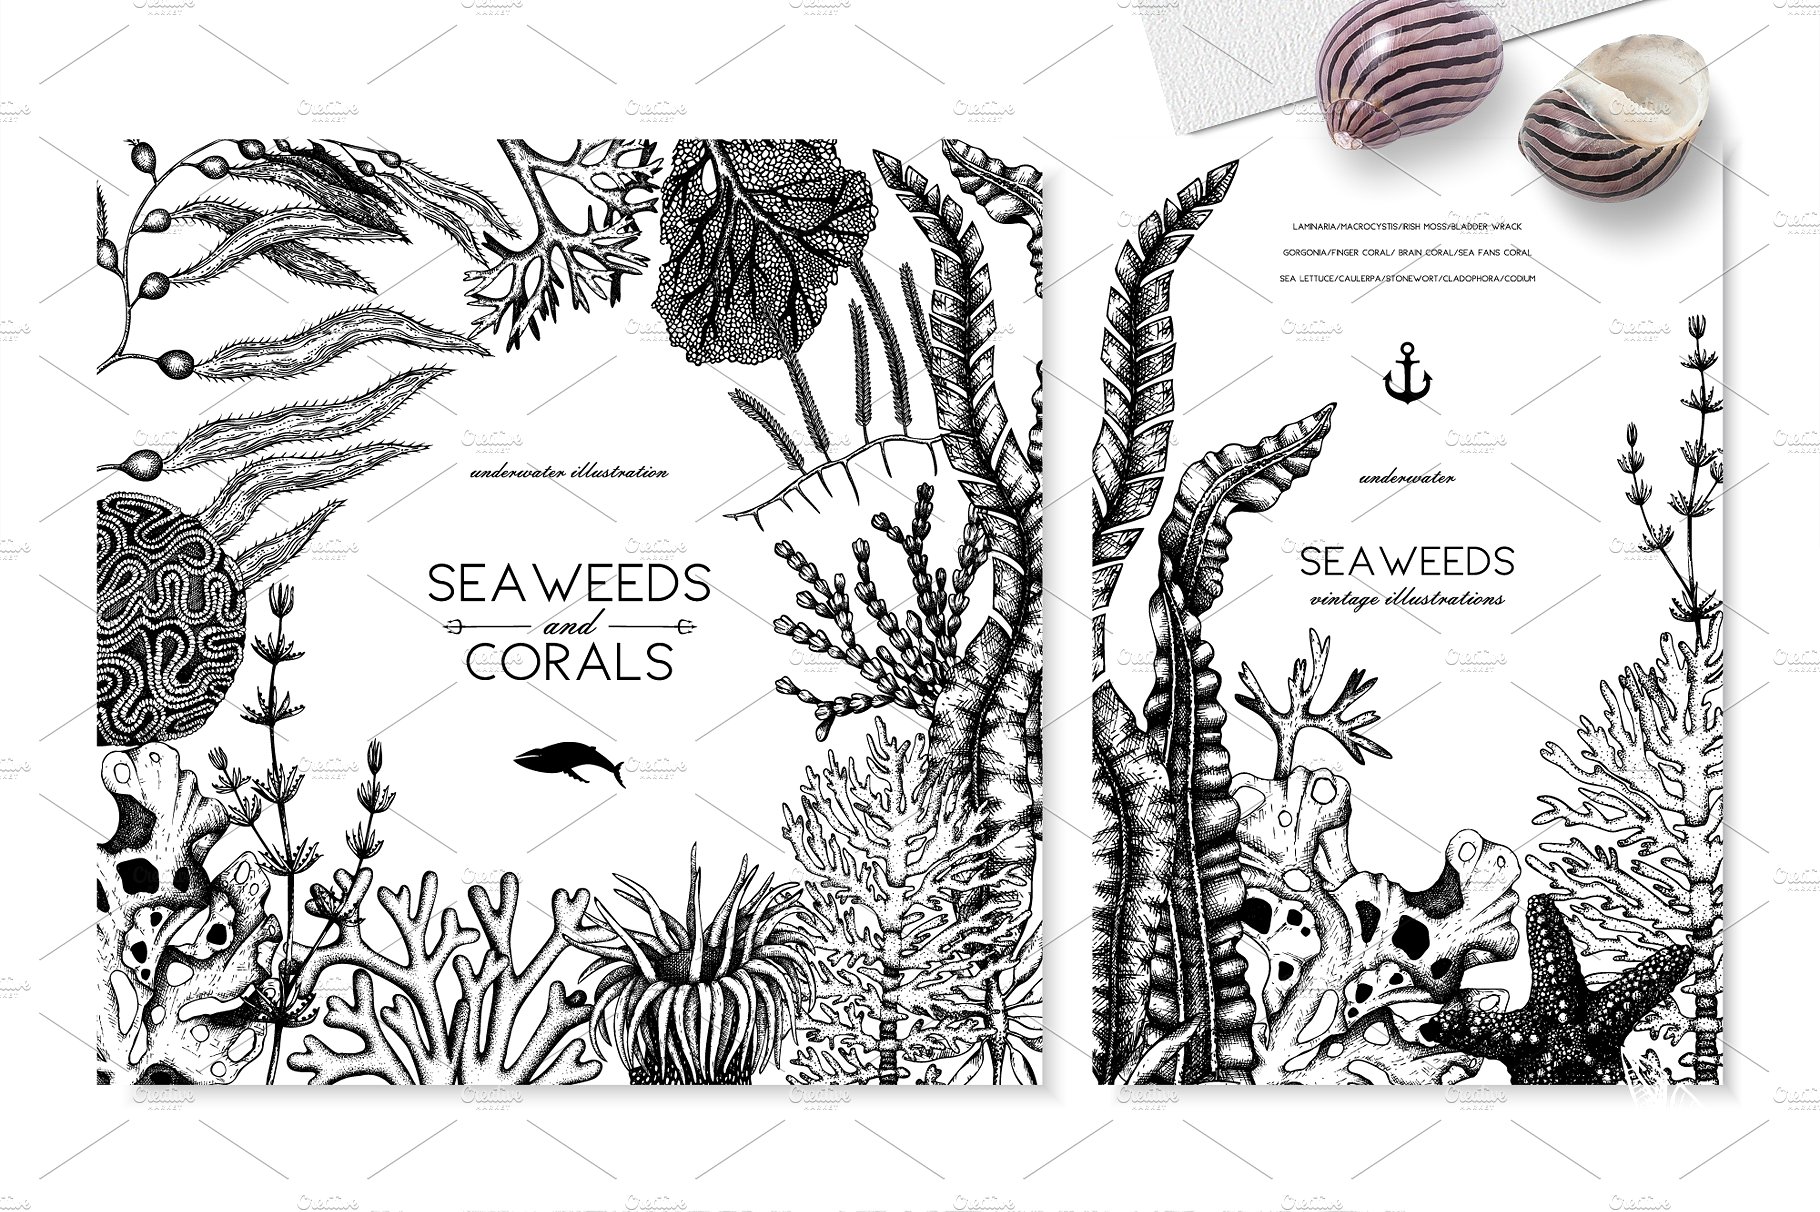 精美手绘粉笔效果插画设计素材Vector Seaweeds